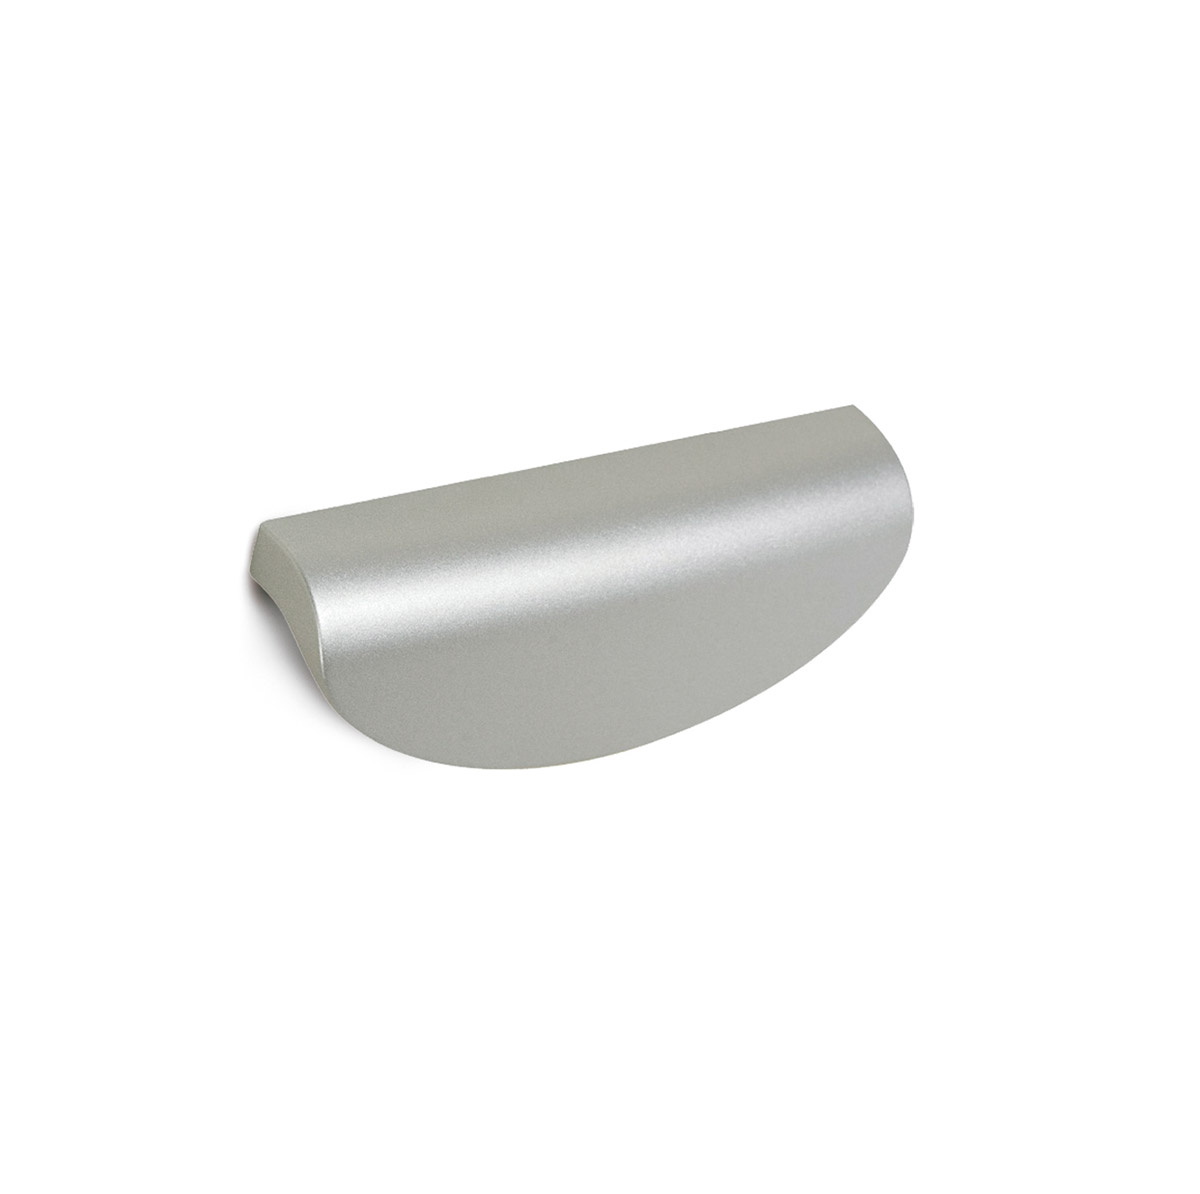 Asa de plástico con acabado aluminio con acabado, dimensiones:105x37x21mm y entrepuntos:96mm